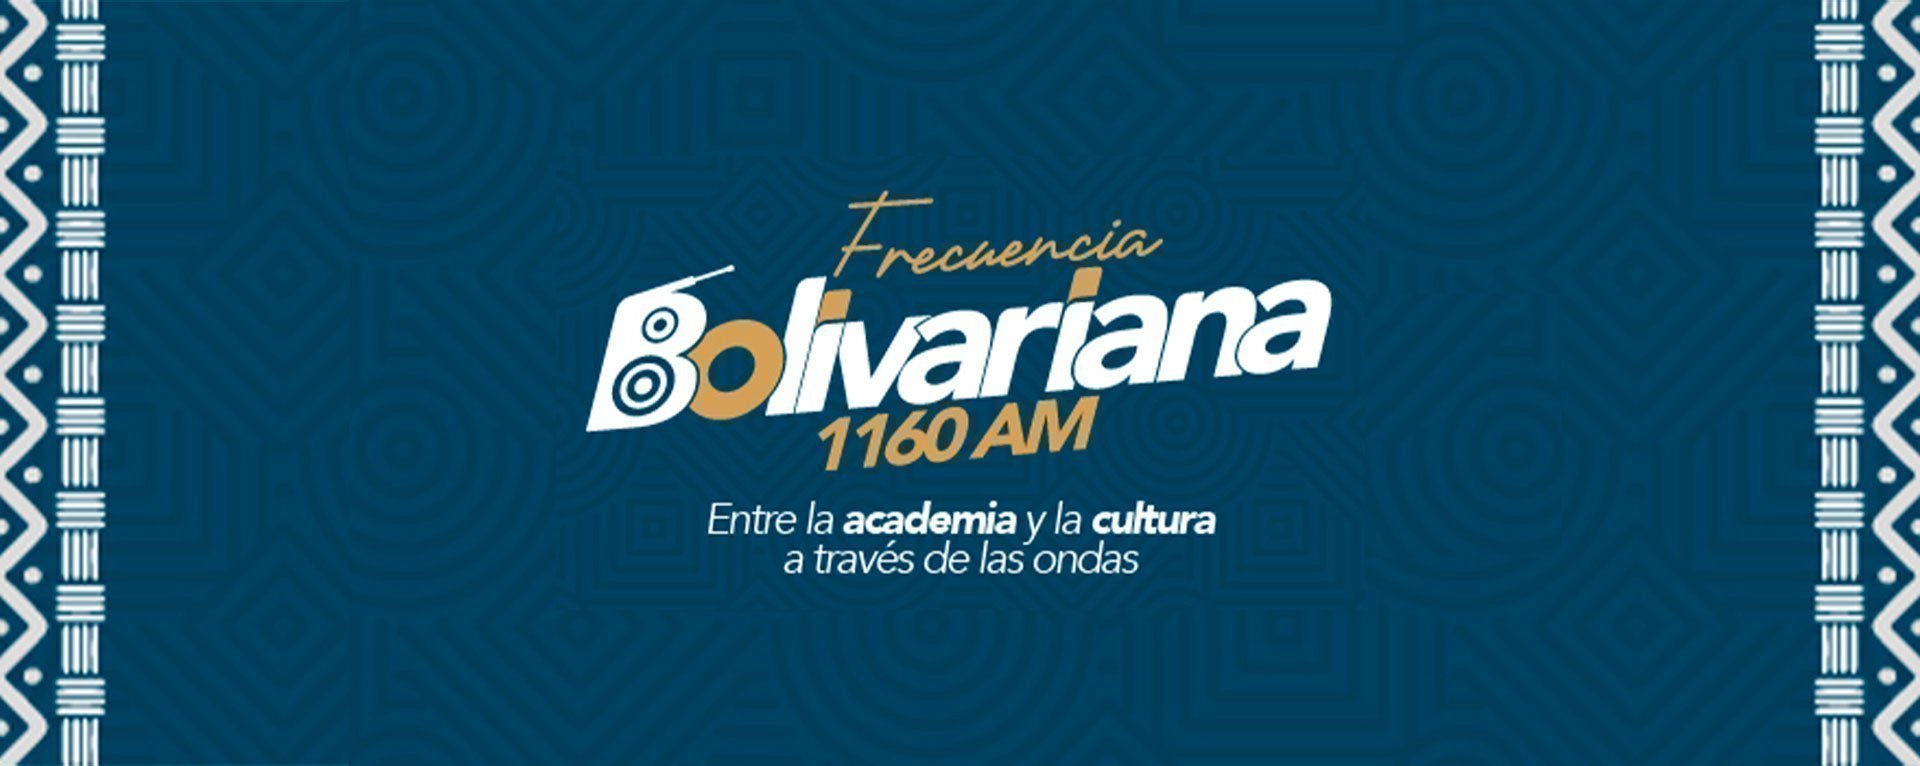 Universidad Pontificia Bolivariana Seccional Montería y la emisora Frecuencia Bolivariana celebran el vigésimo aniversario de su emisora.